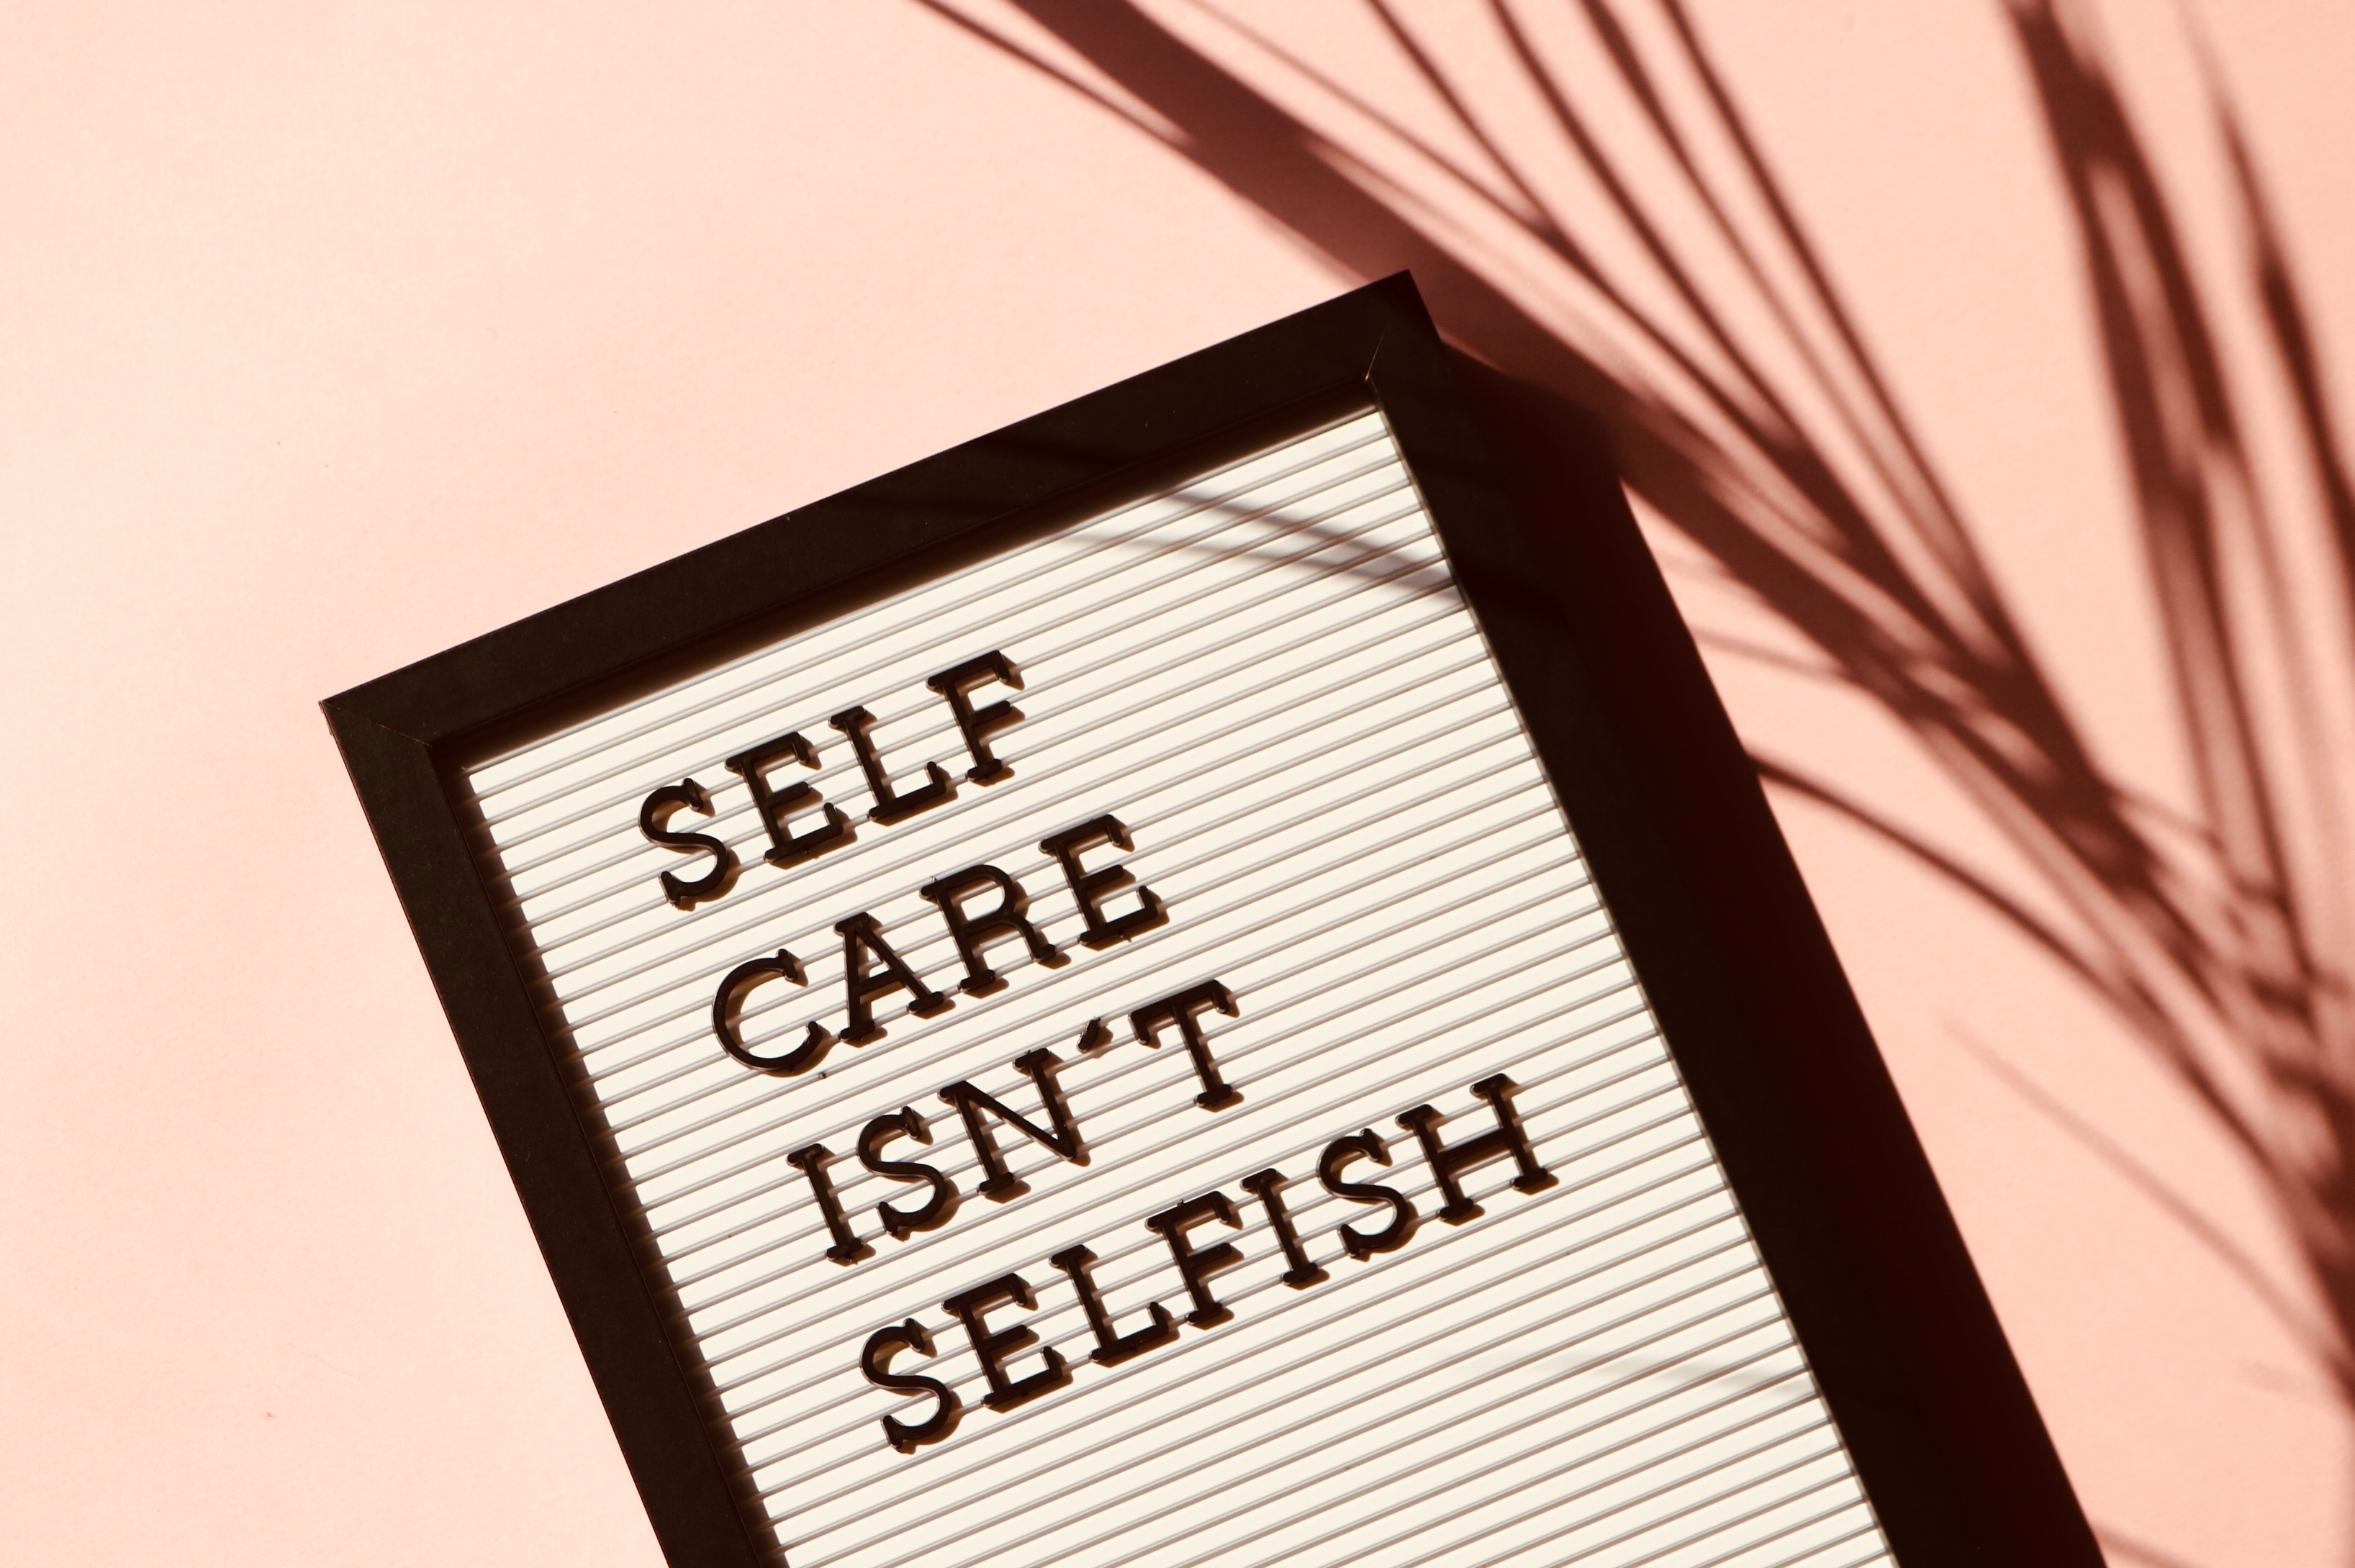 "Self care isn't selfish" poster